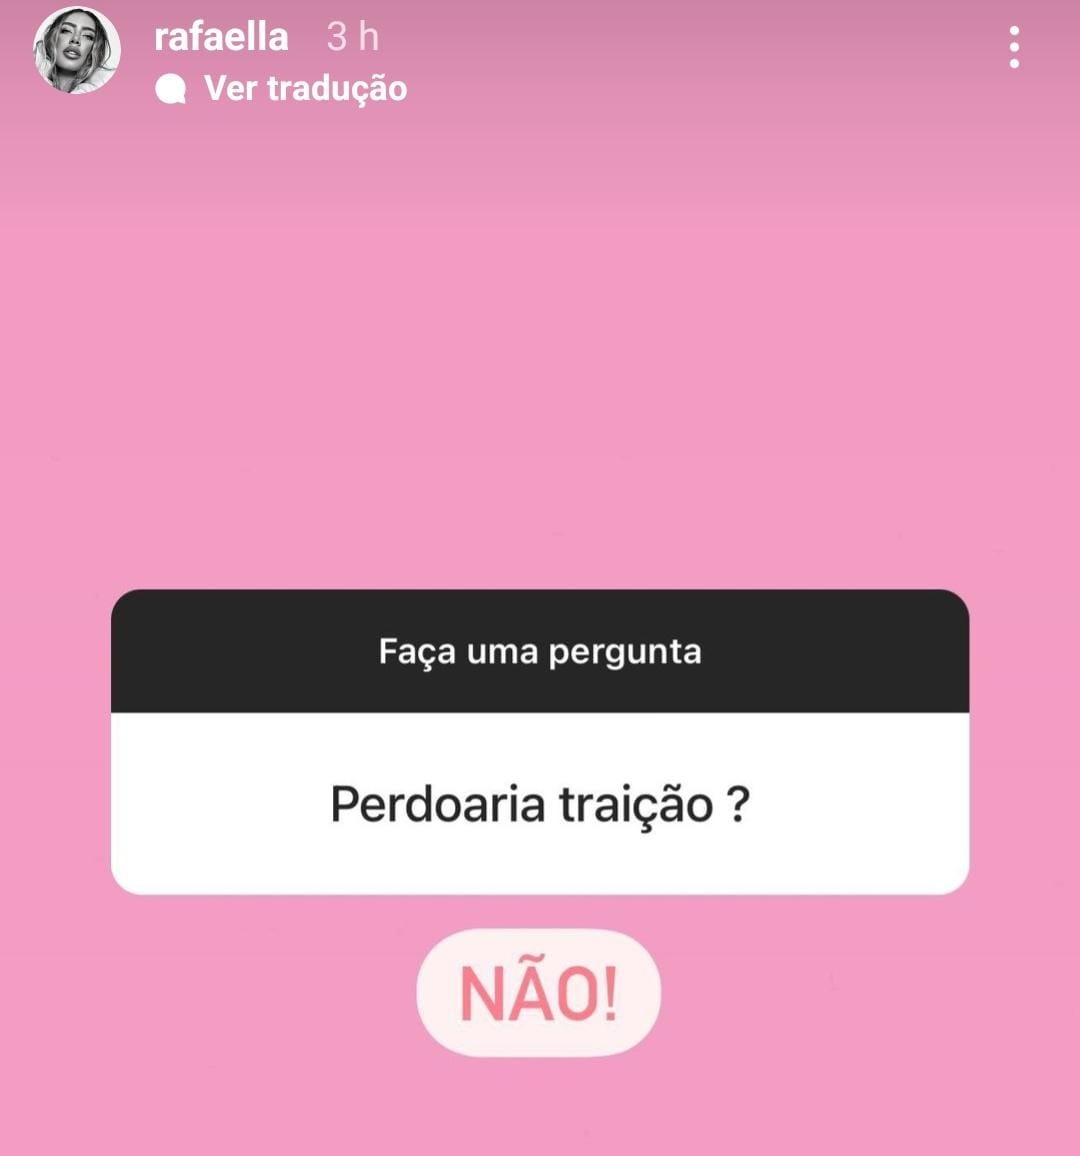 Rafaella Santos responde internautas no Instagram (Foto: Reprodução/Instagram)